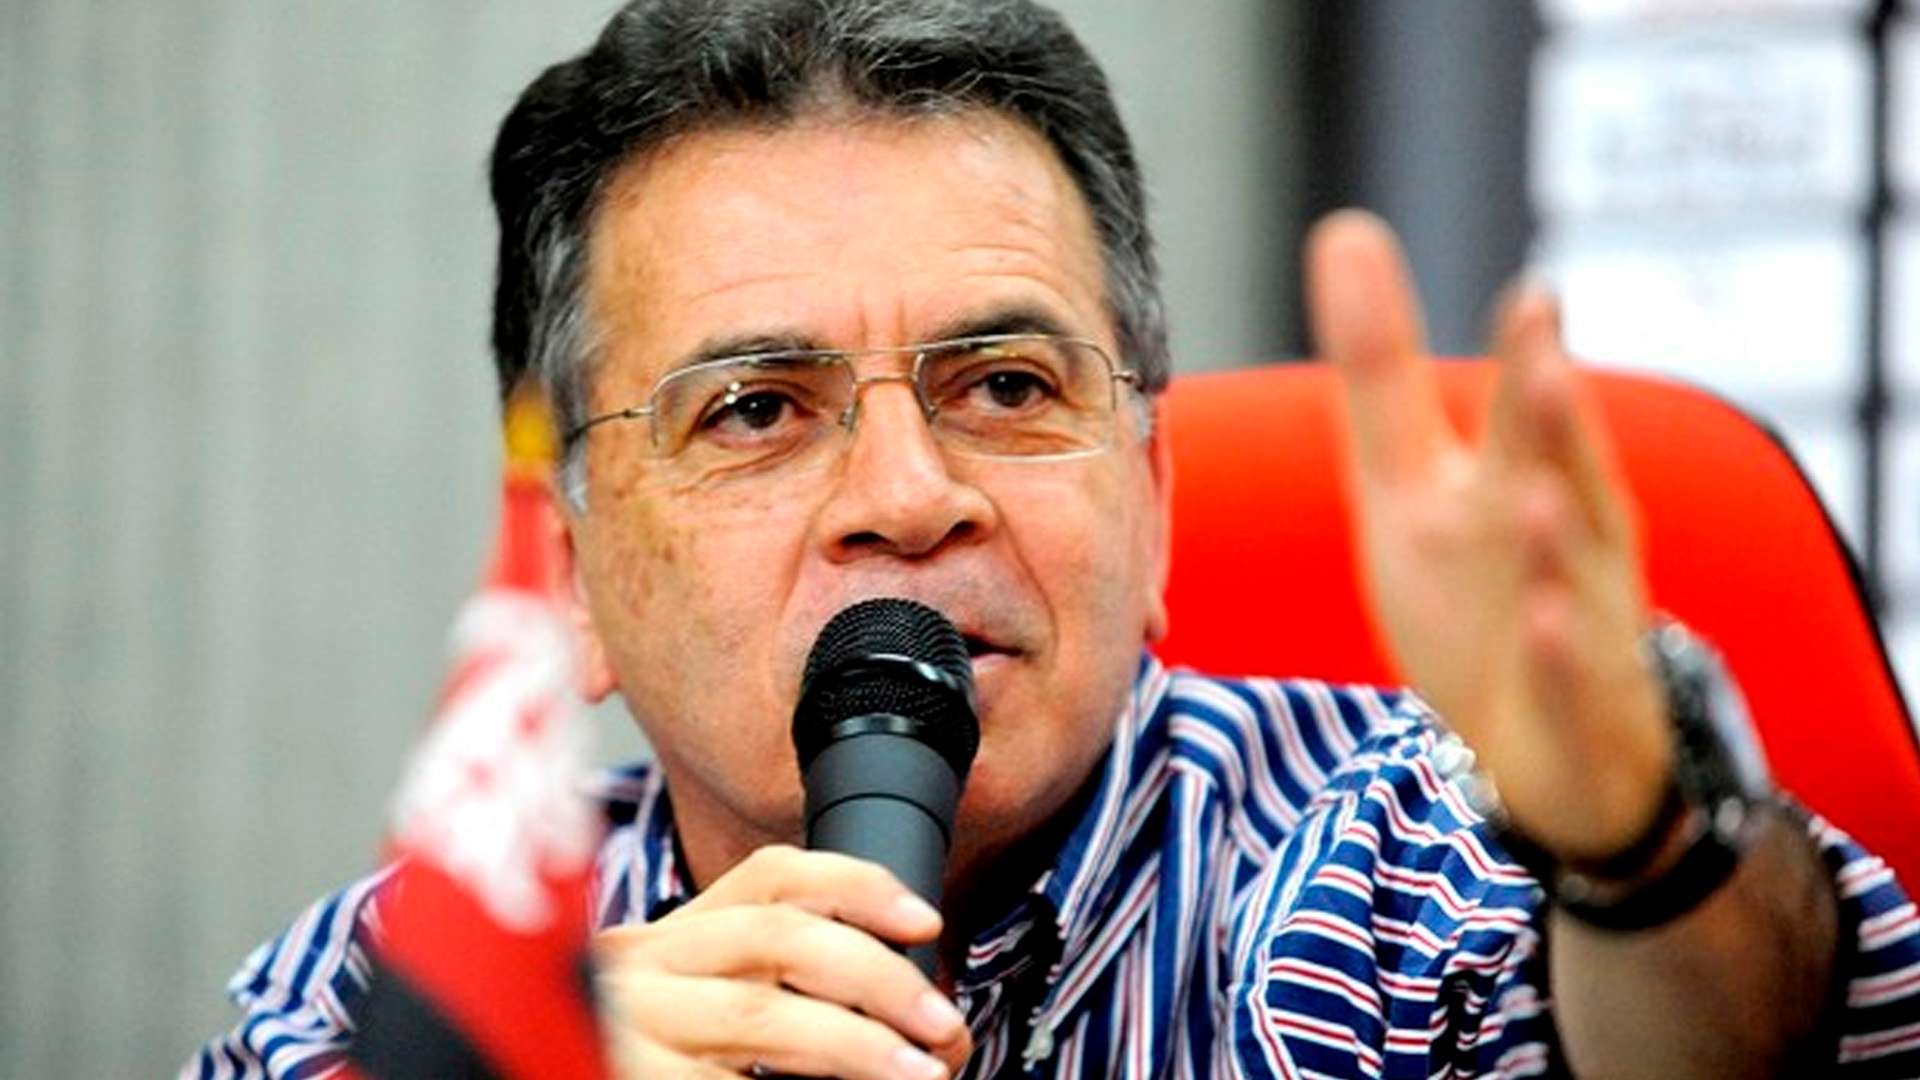 Paulo Pelaipe Diretor de Futebol Flamengo 2014